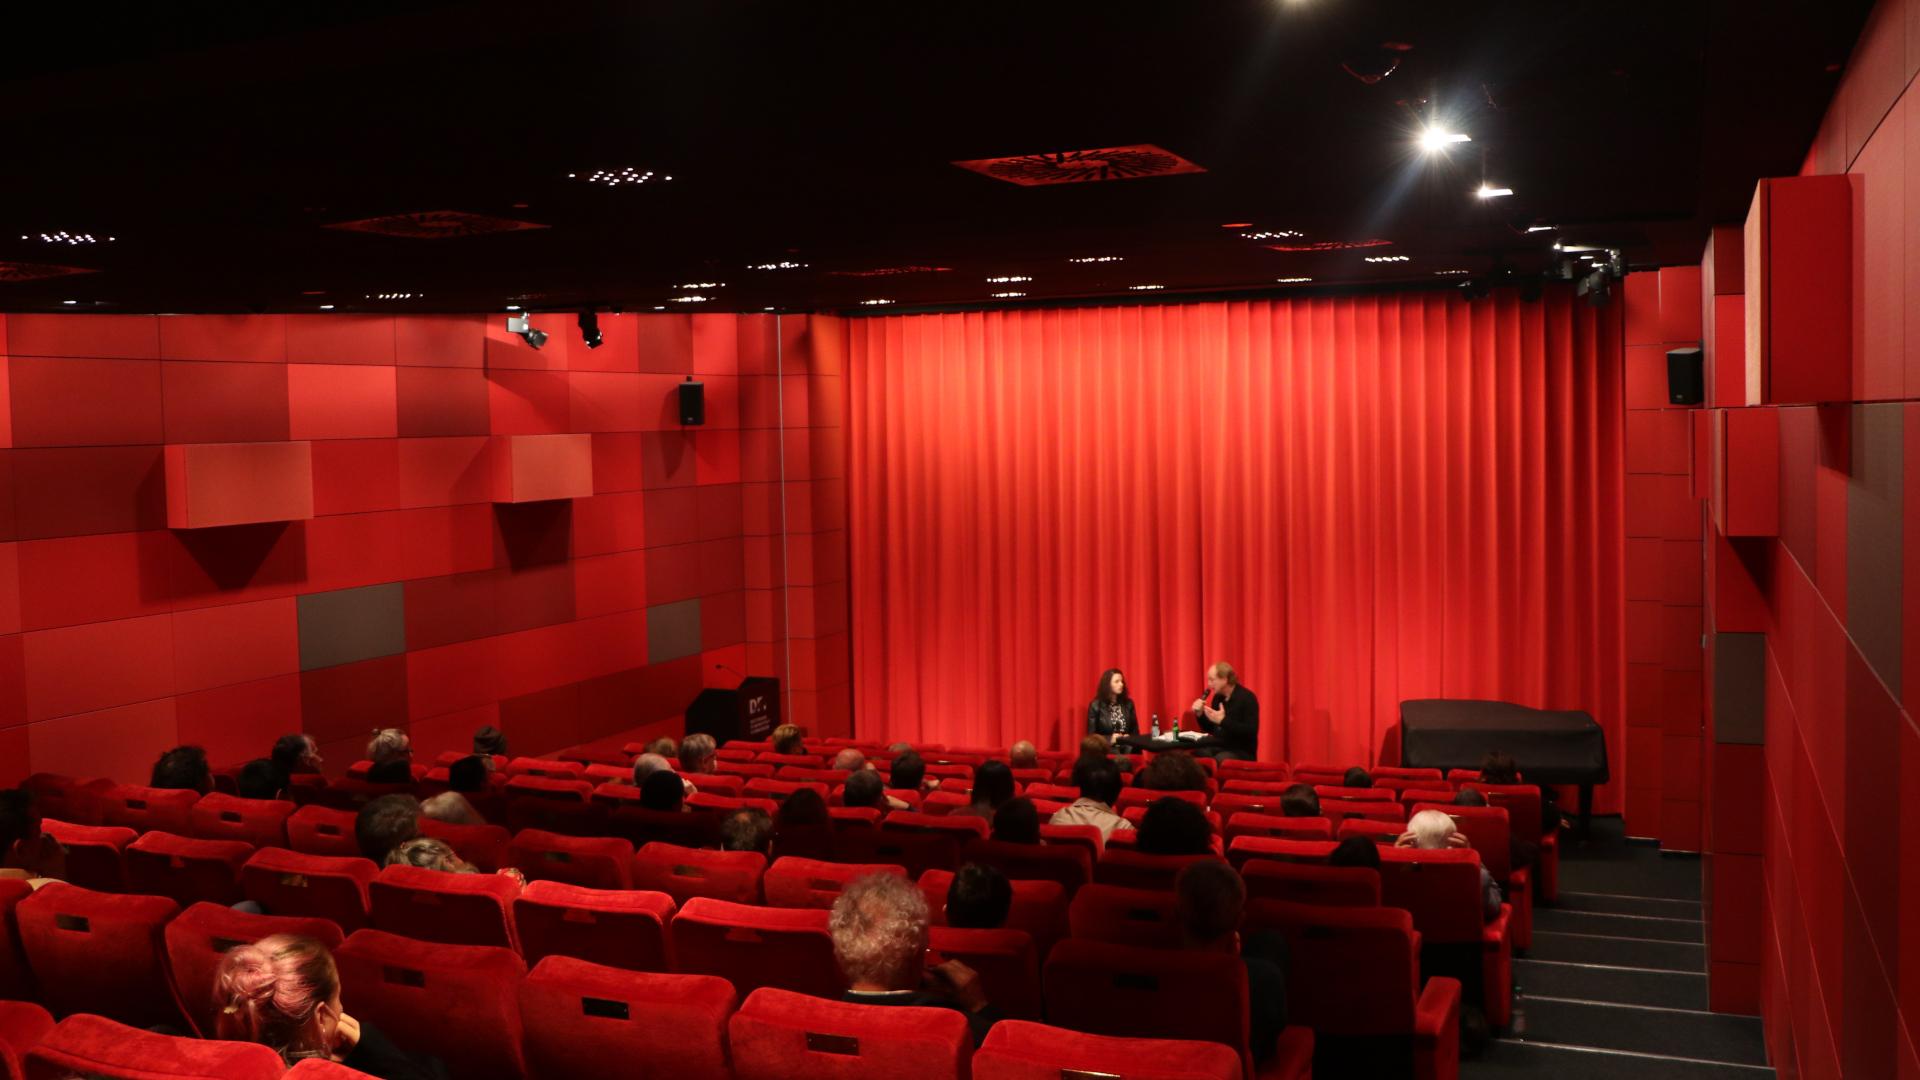 Das Kino des DFF: Rote Samtstühle, rote Wand, roter Vorhang; in den Reihen sitzen Zuschauer:innen und vor dem geschlossenen Vorhang sitzen zwei Personen, die in einem Gespräch sind